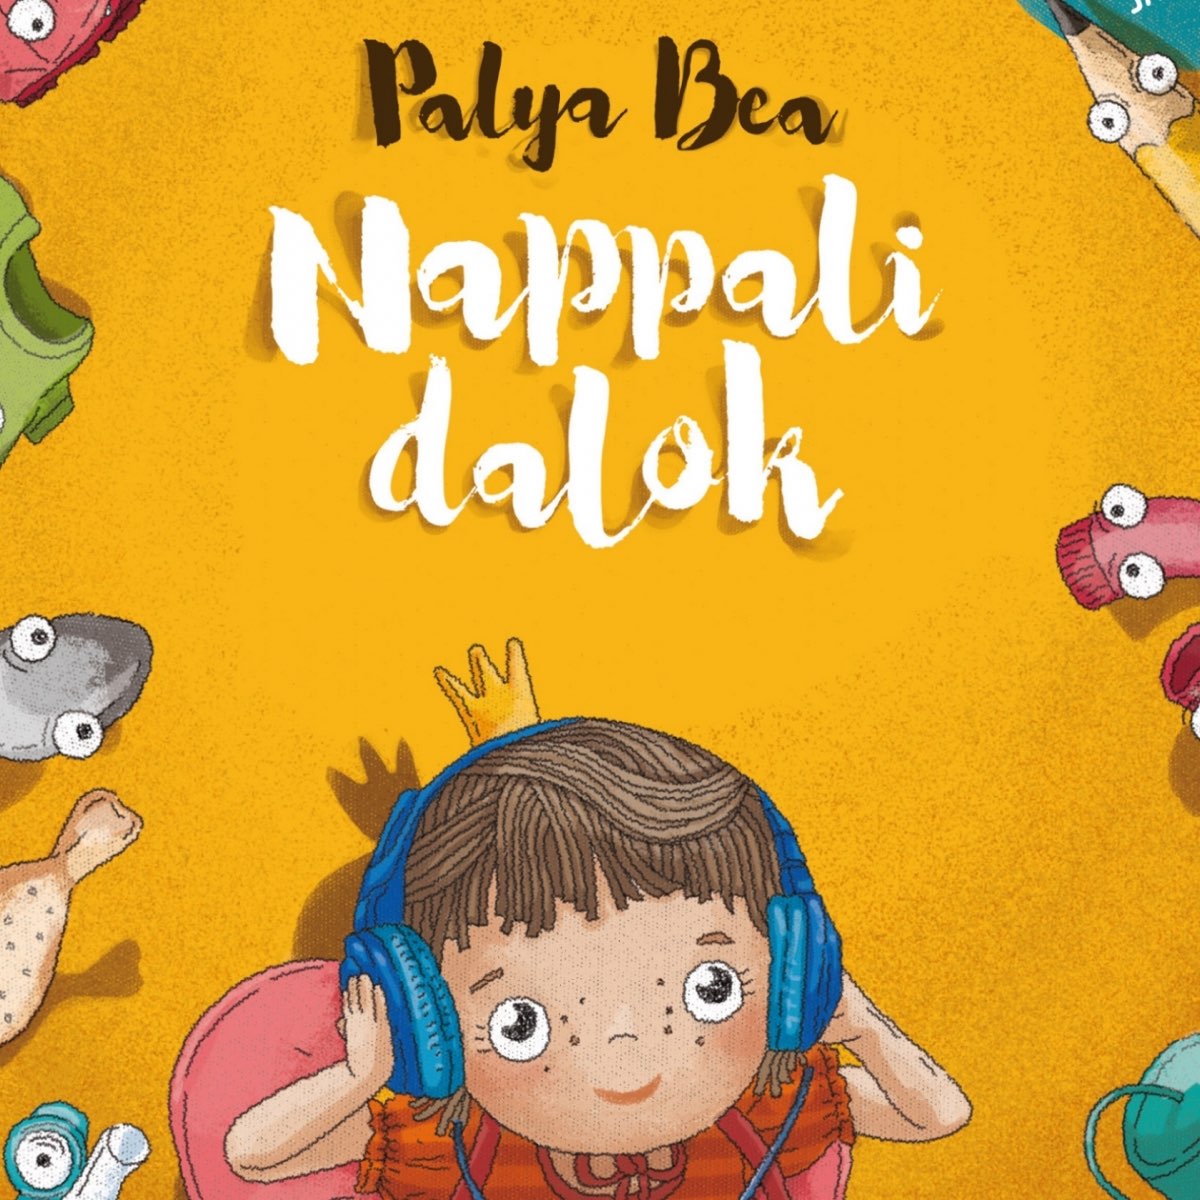 Nappali dalok by Palya Bea on Apple Music